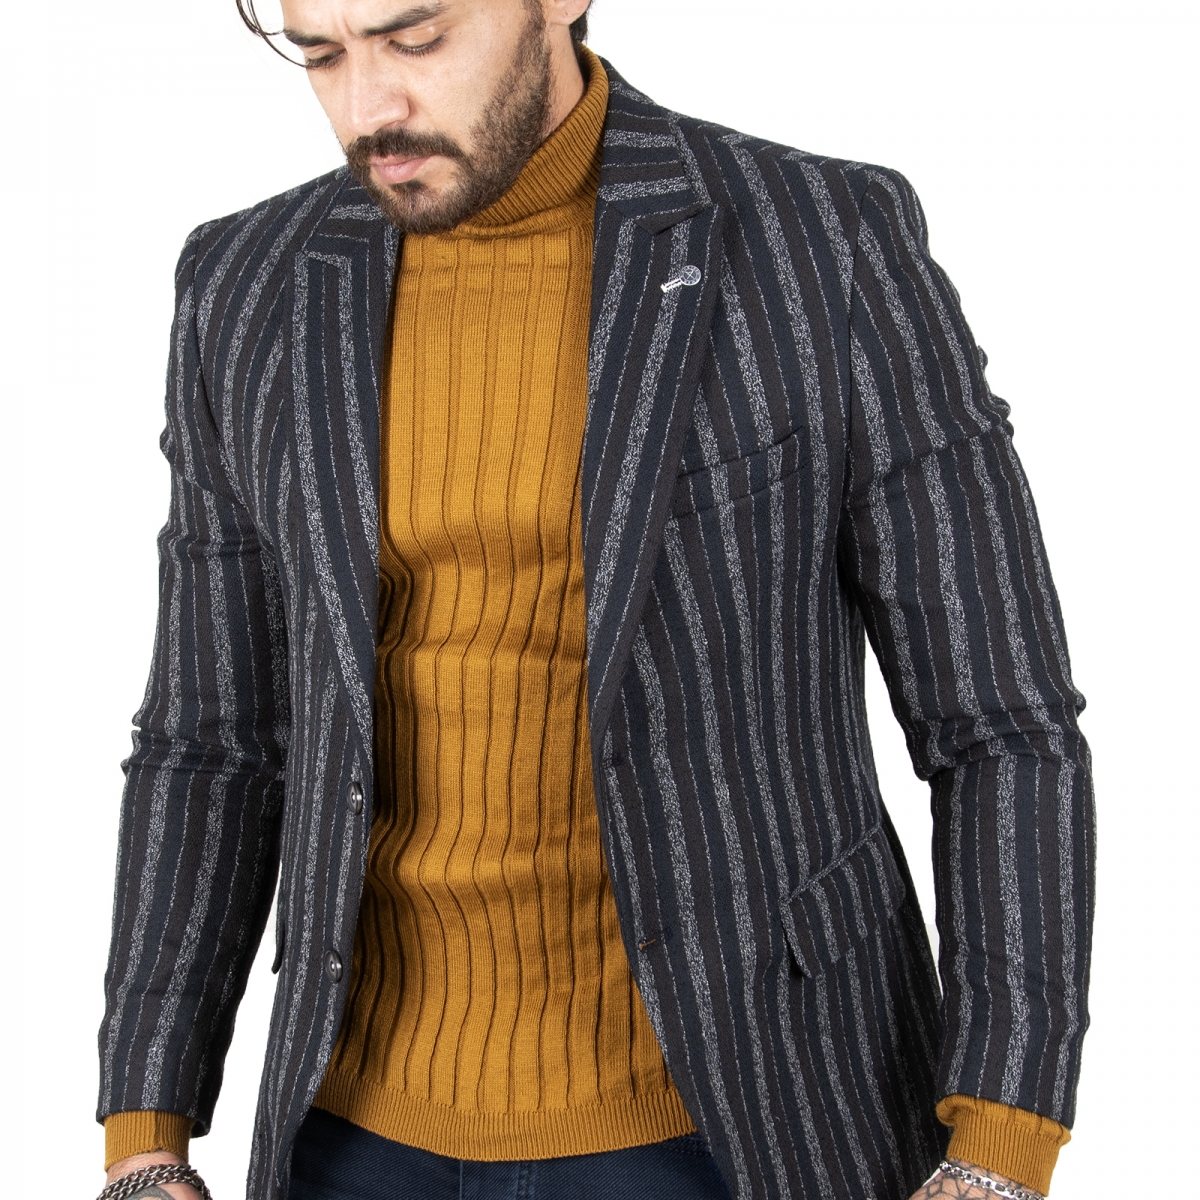 DeepSEA Erkek Lacivert  Çift Düğme Çift Yırtmaçlı Çizgili Slim Fit Blazer Ceket 2210441